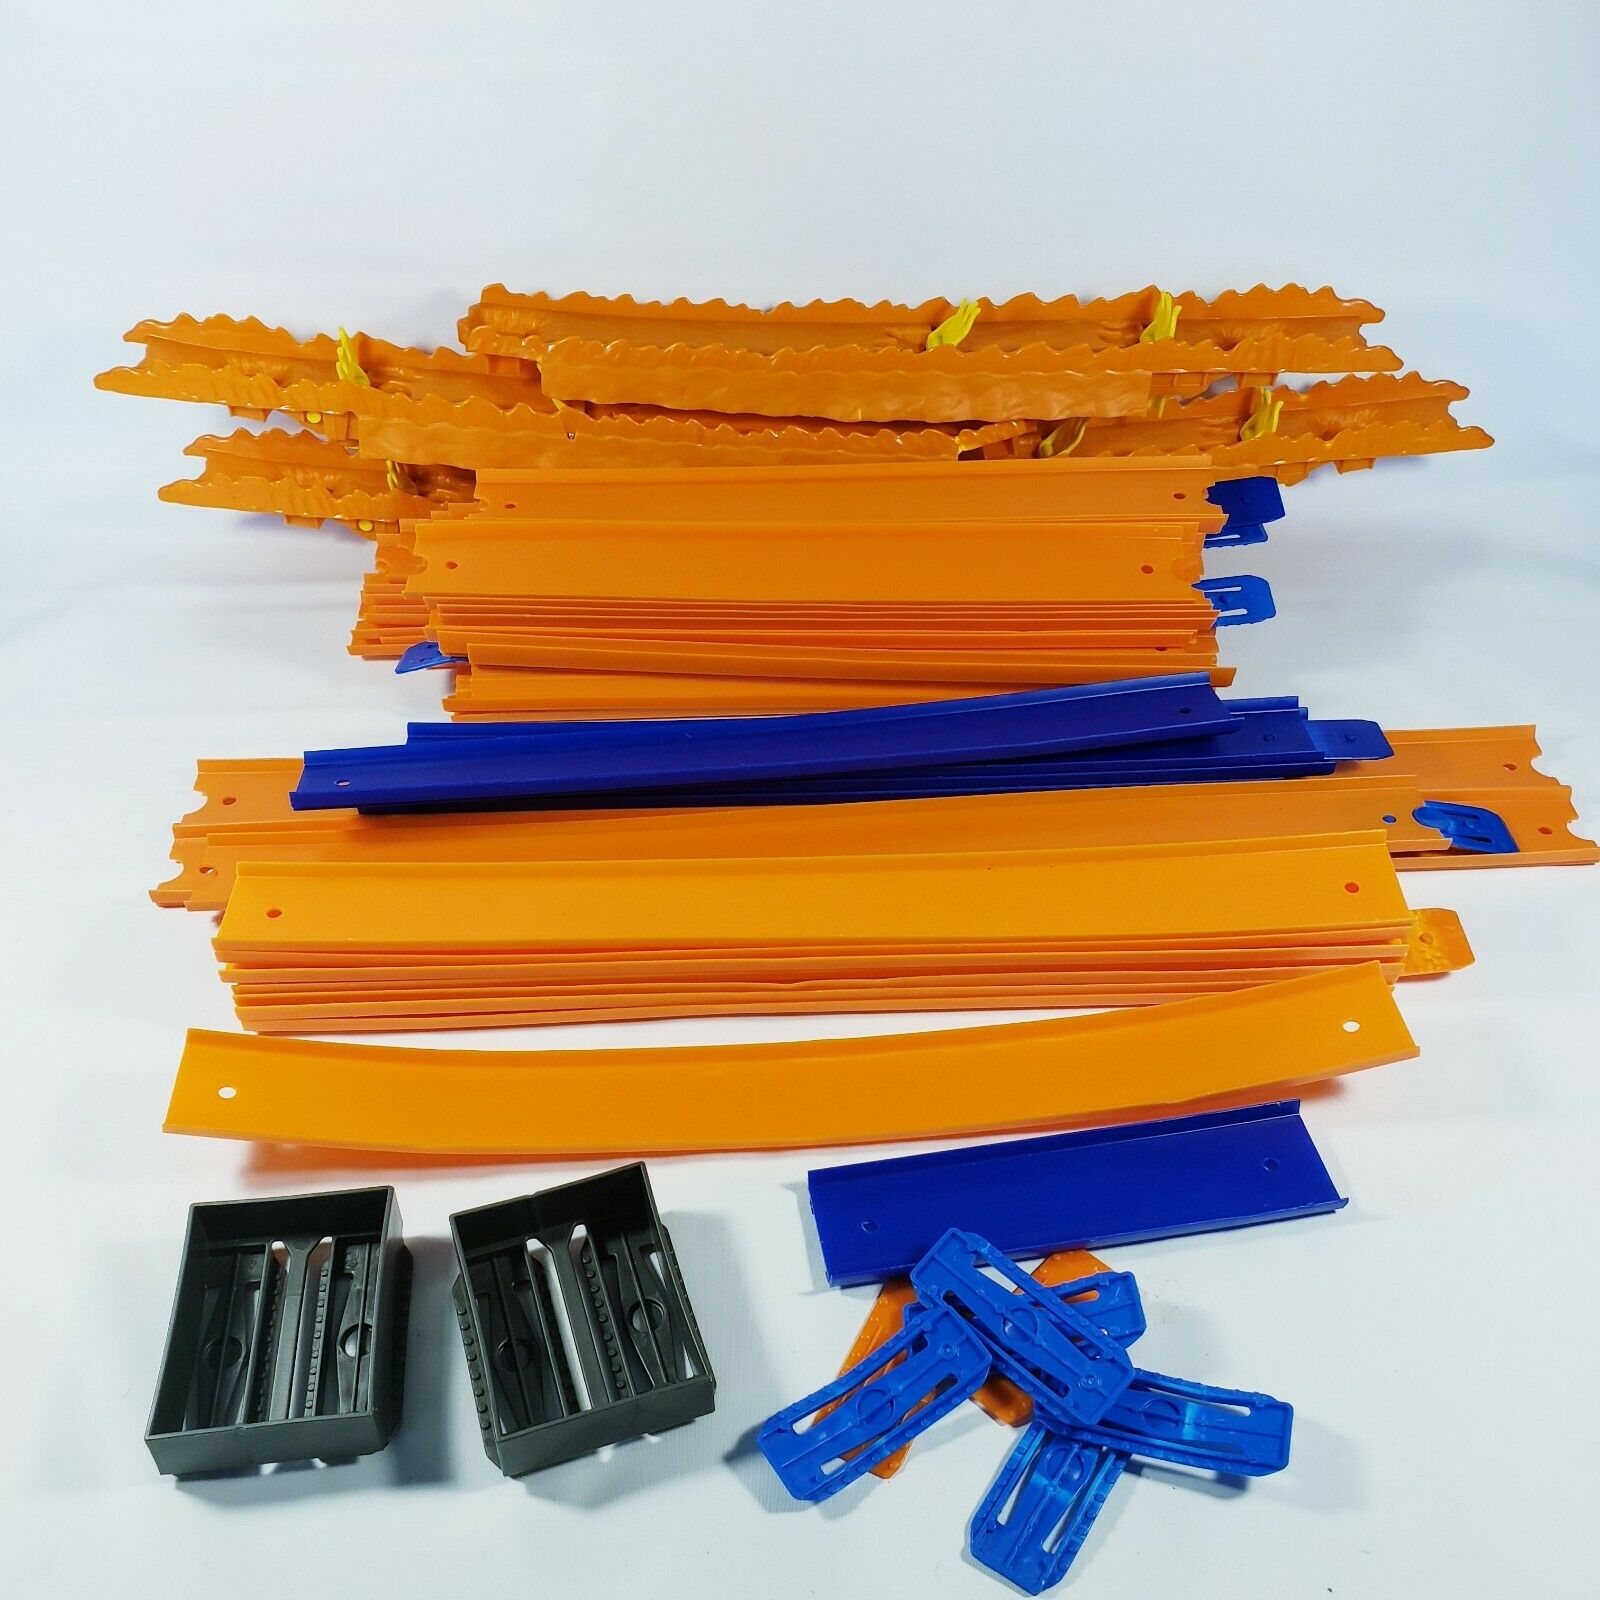 Lot 65 Pcs 50+ Ft Hot Wheels Toy Race Track Orange Connectors & Misc Pieces